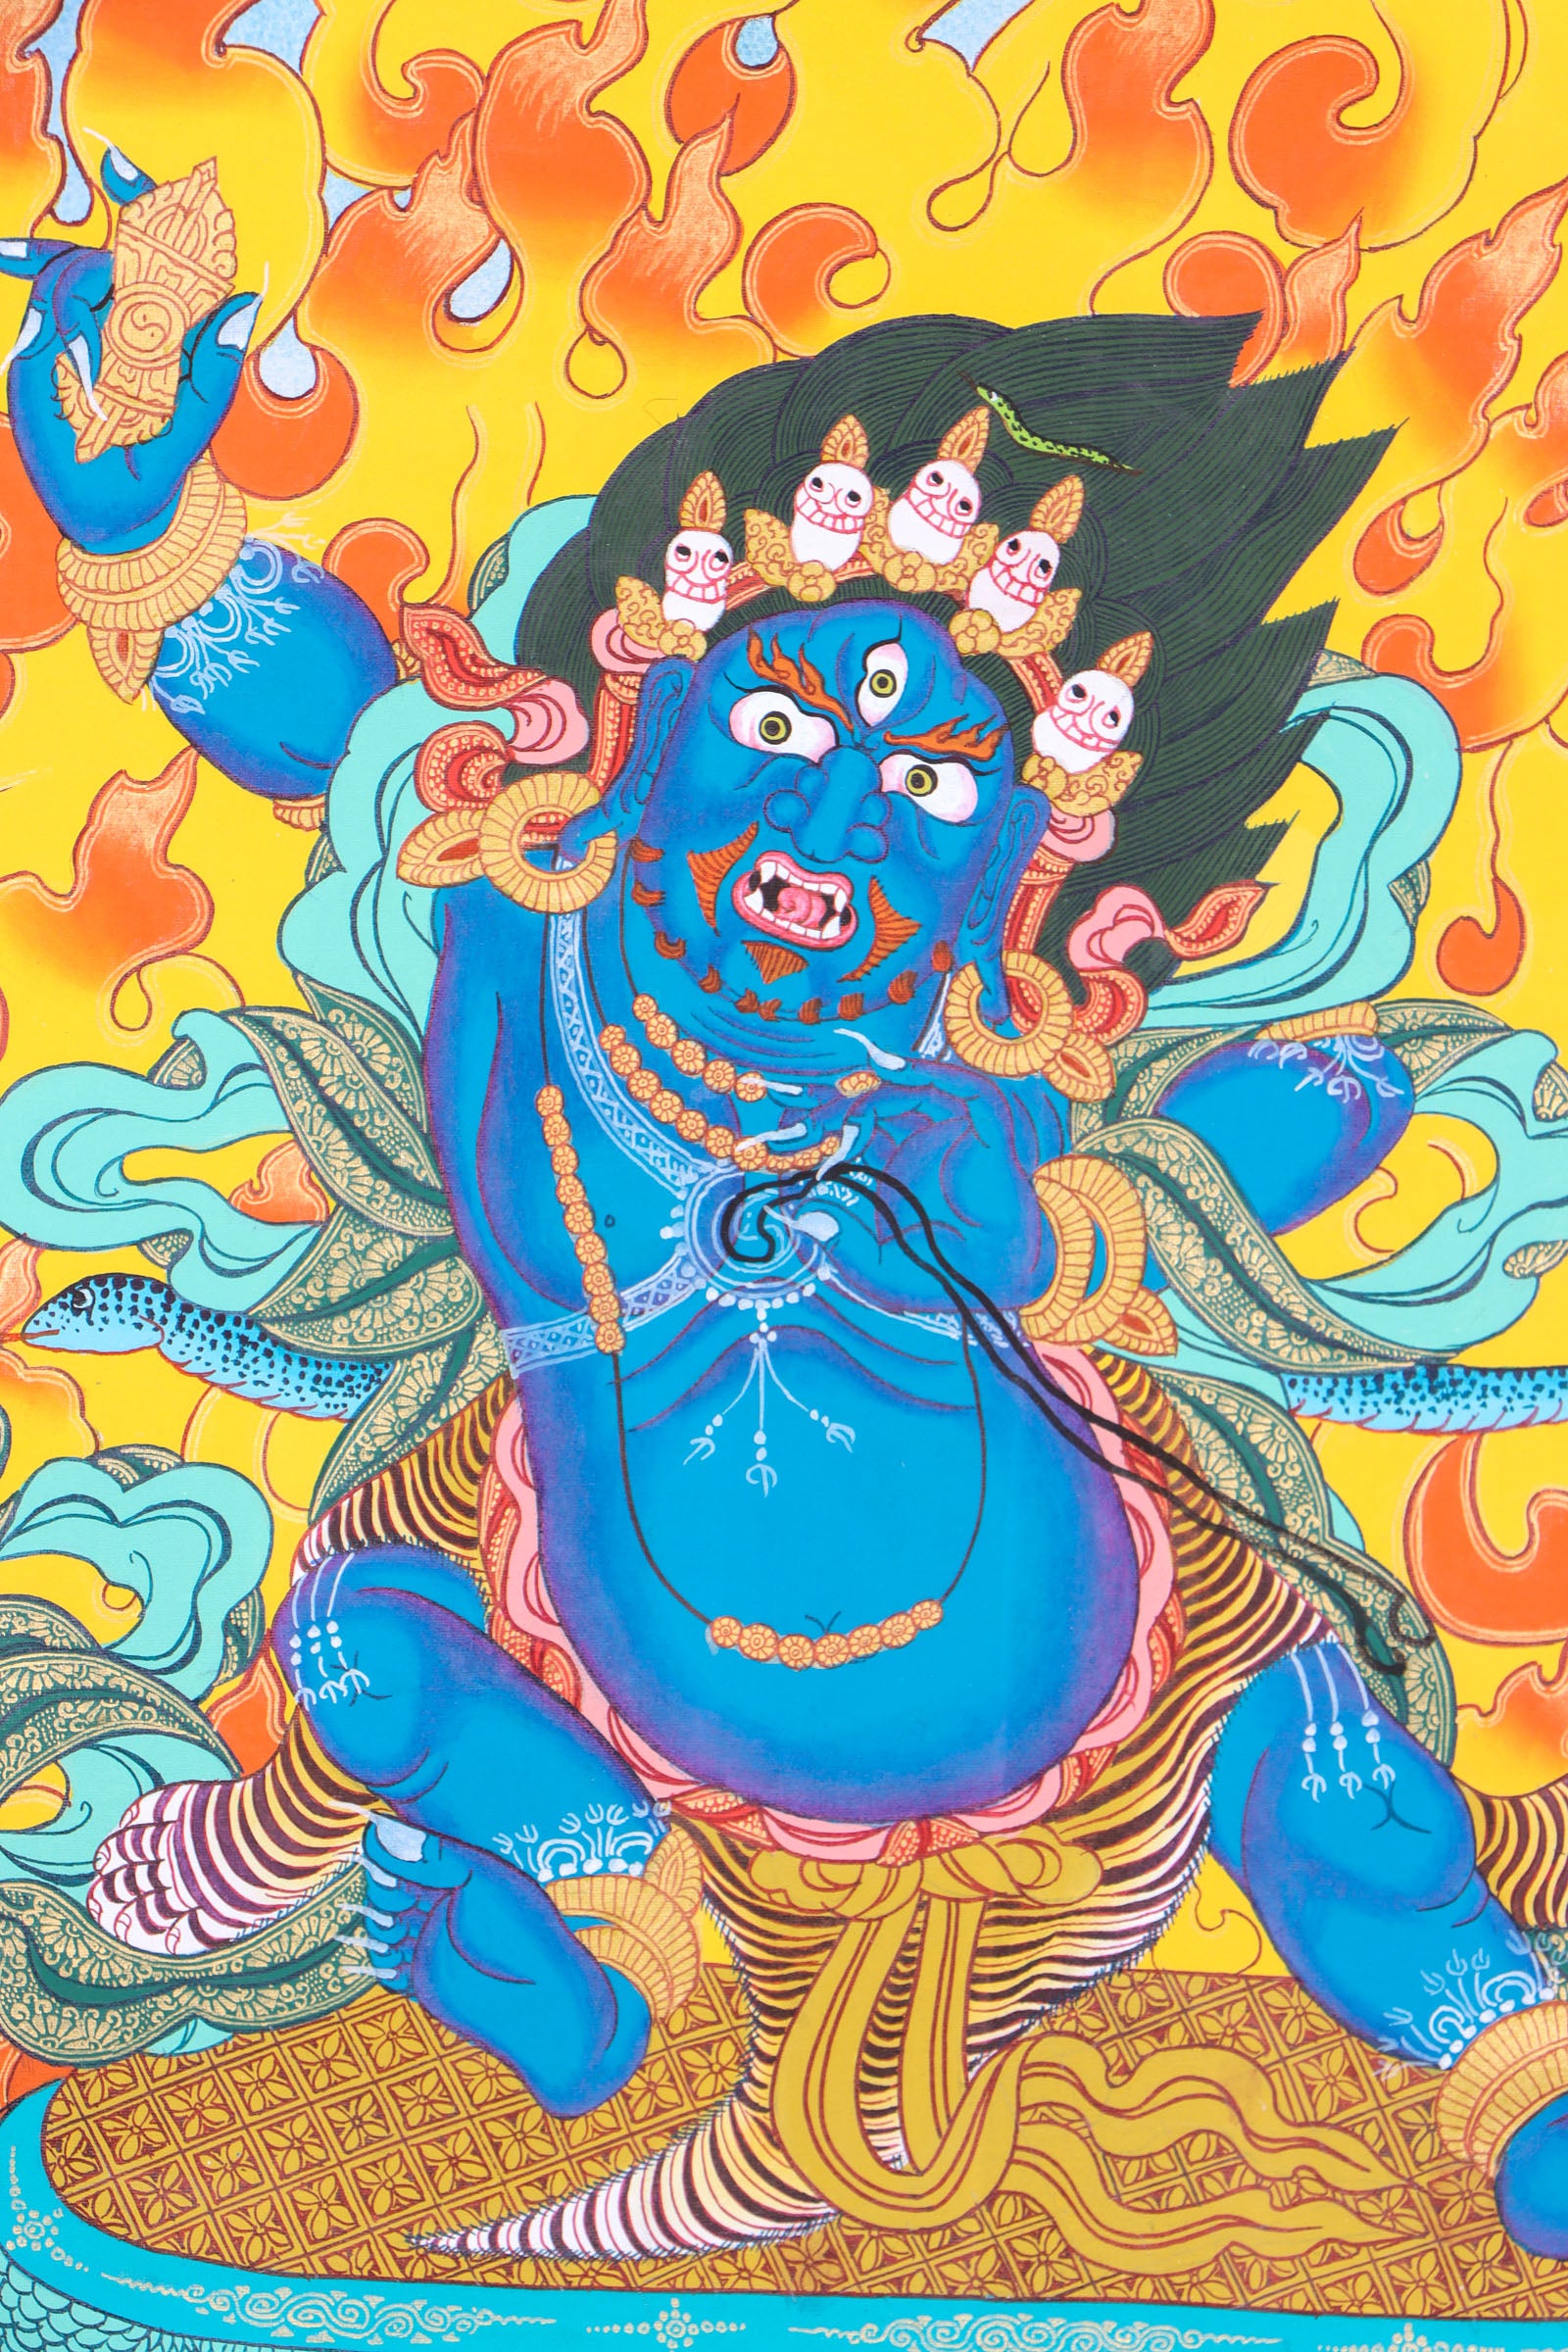 Vajrapani Thangka Painting for spirituality.